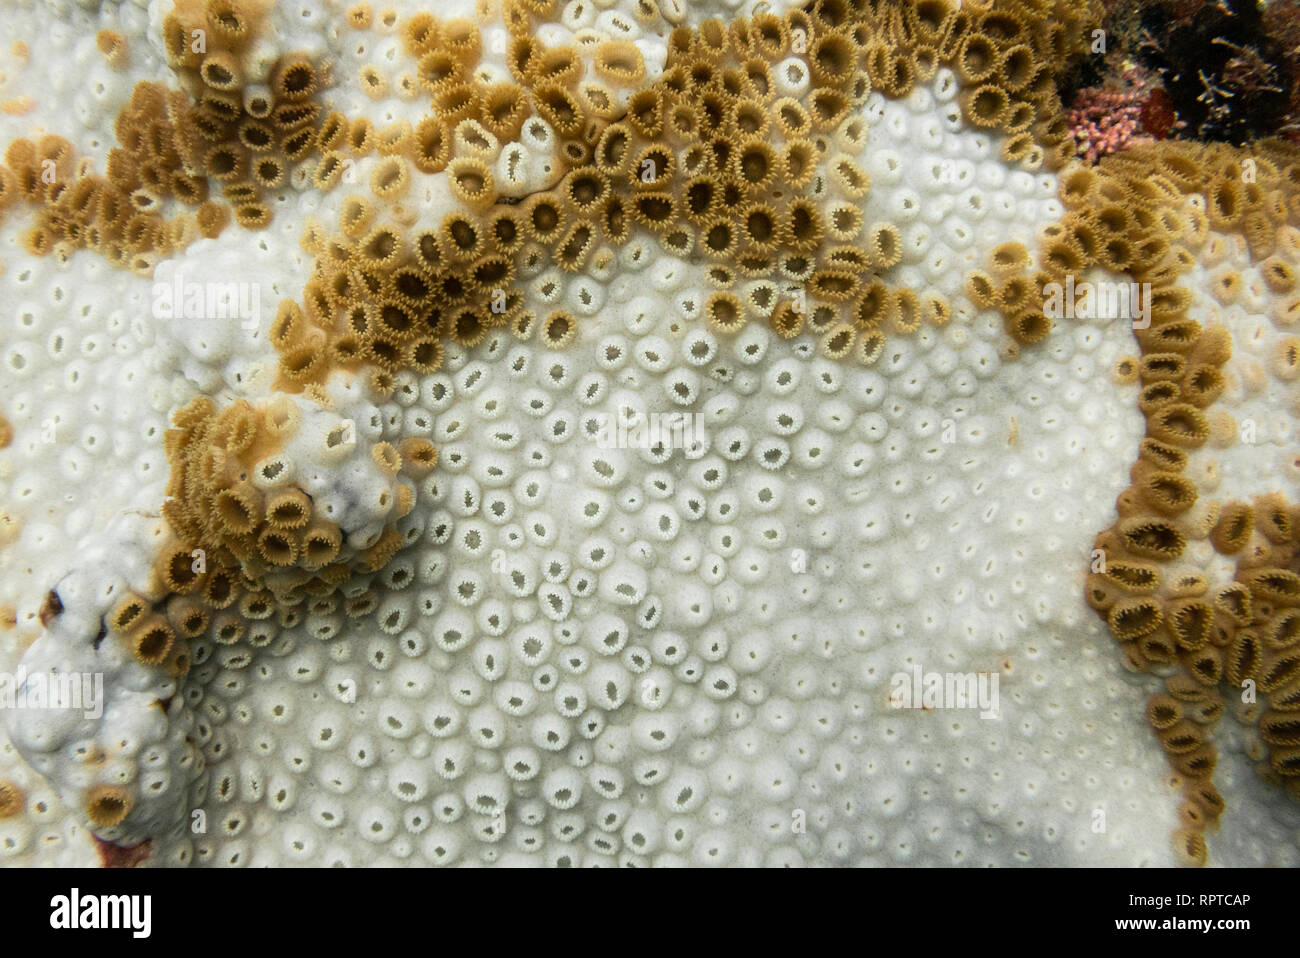 Palythoa caribaeorum coral mostrando fuertes signos de blanqueamiento de corales, de se blanquea/Brasil, Ilhabela Foto de stock